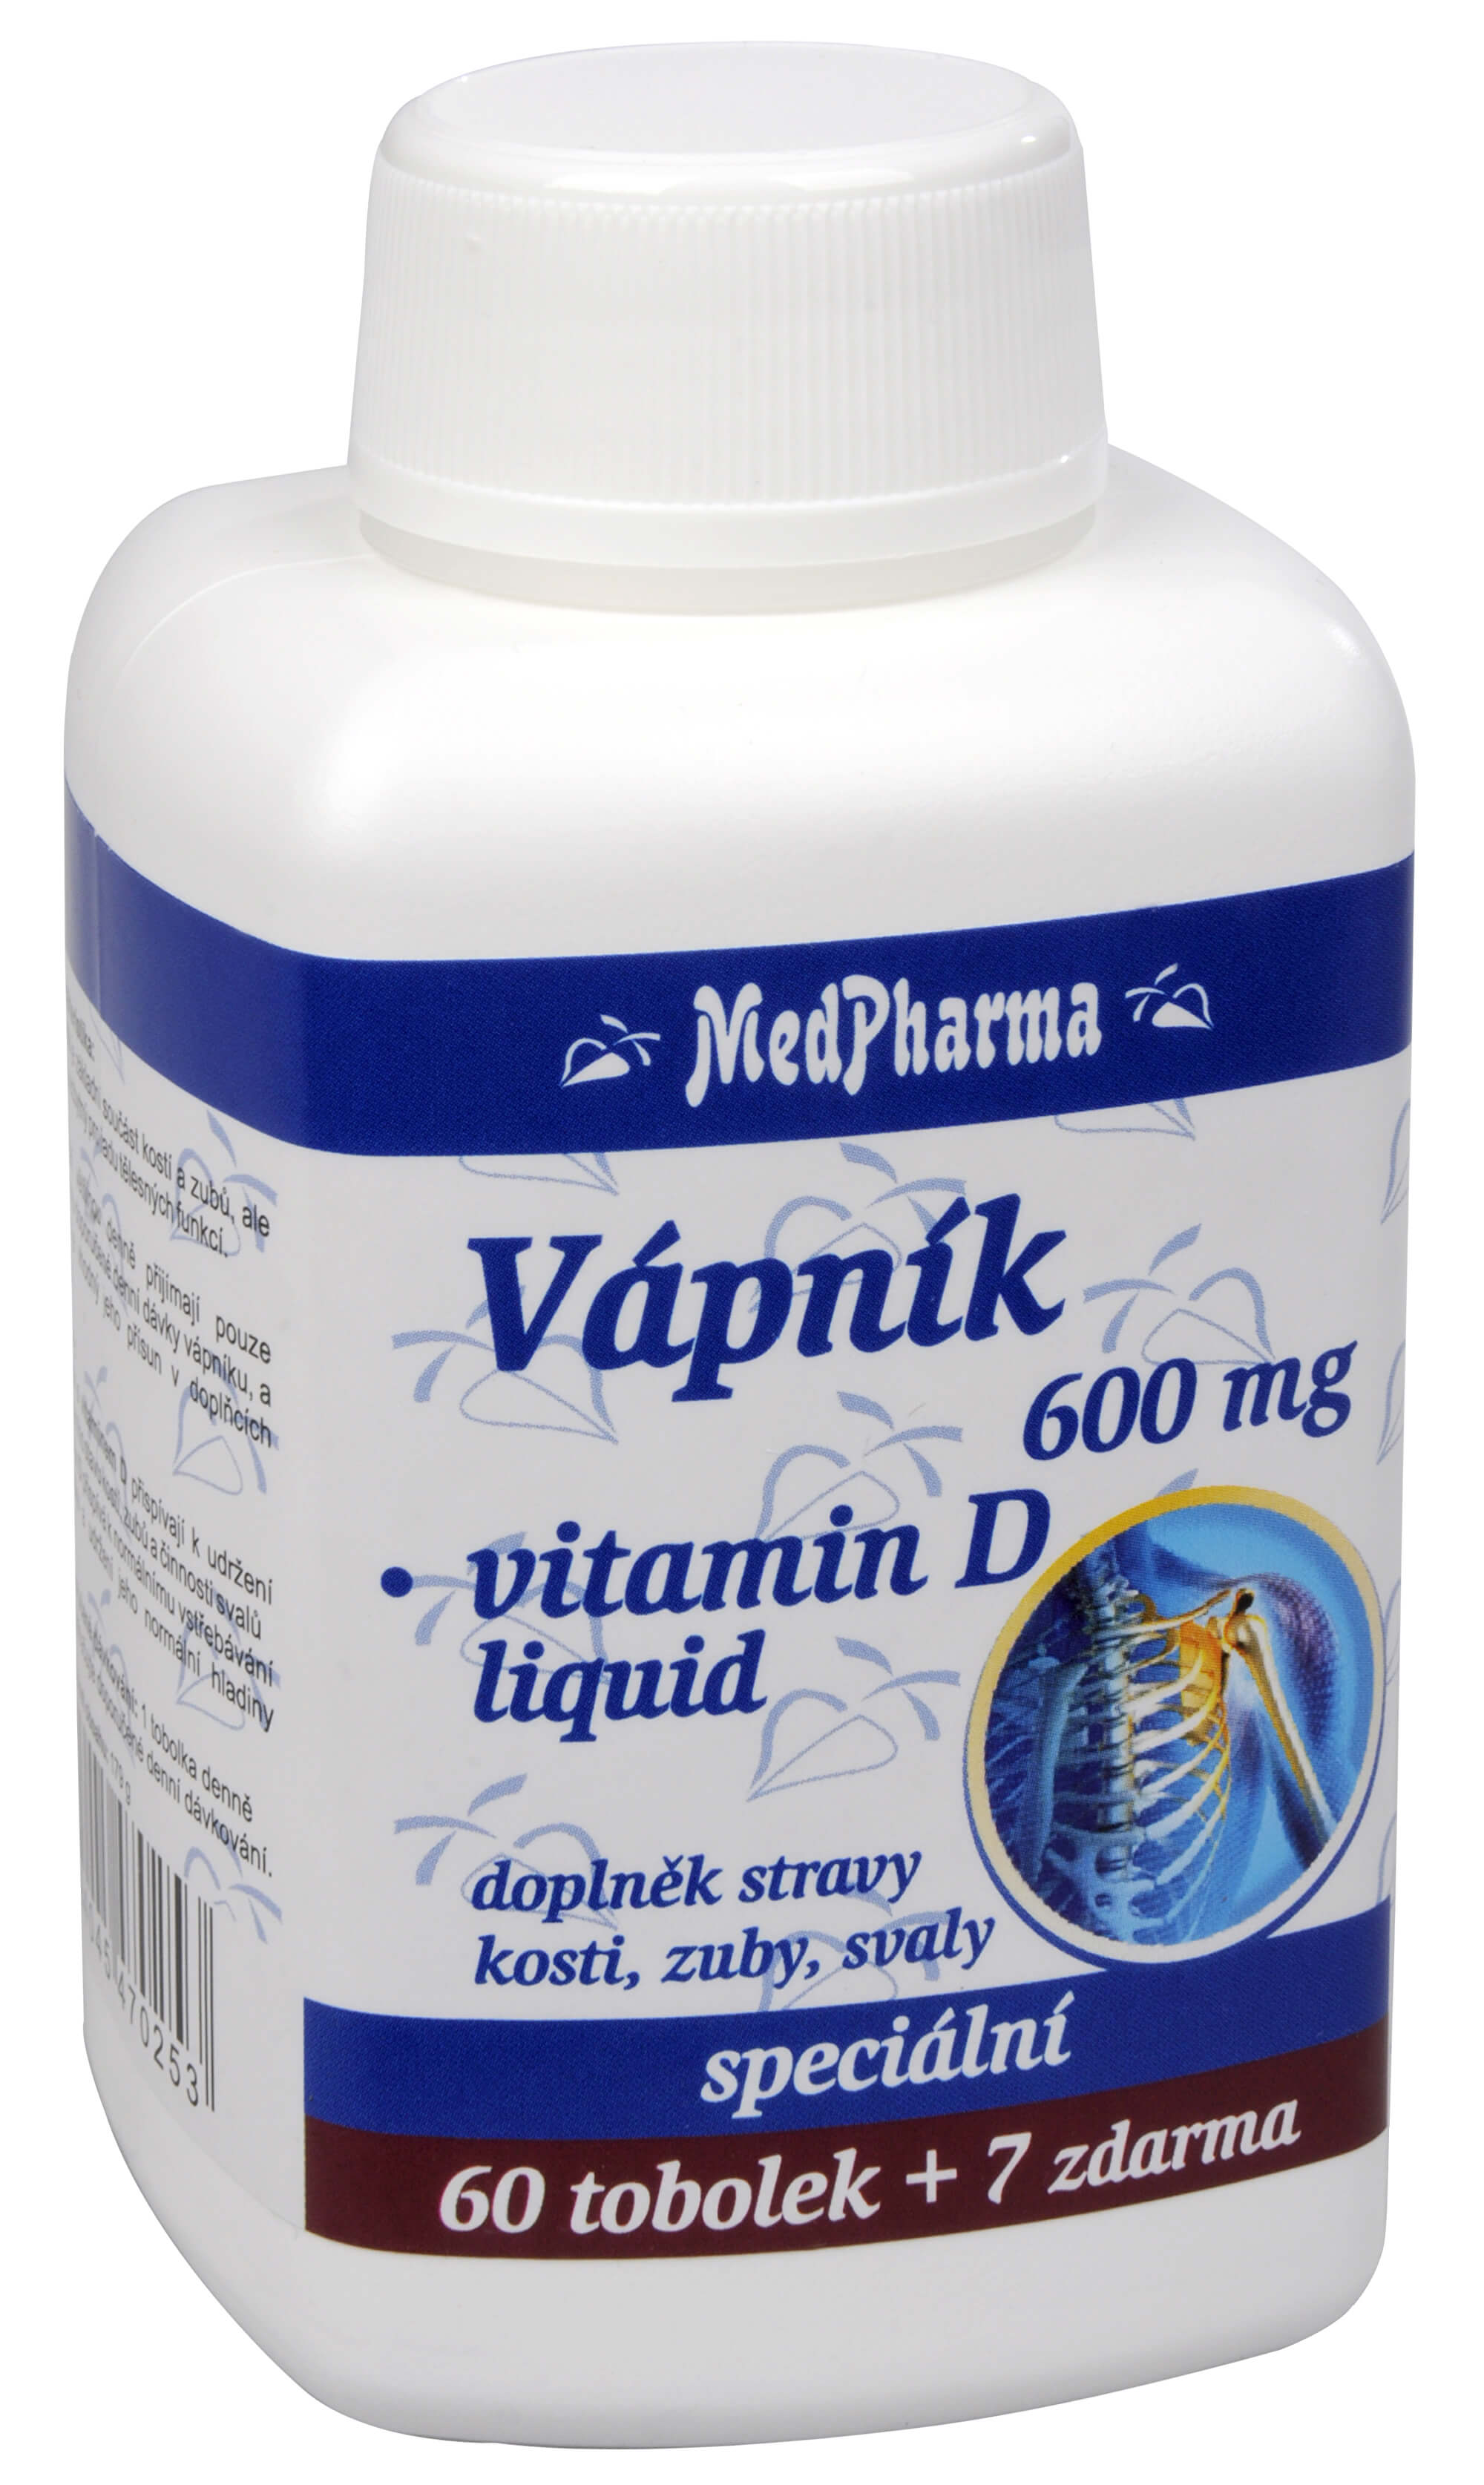 Zobrazit detail výrobku MedPharma Vápník 600 mg + vitamín D liquid 60 tob. + 7 tob. ZDARMA + 2 měsíce na vrácení zboží